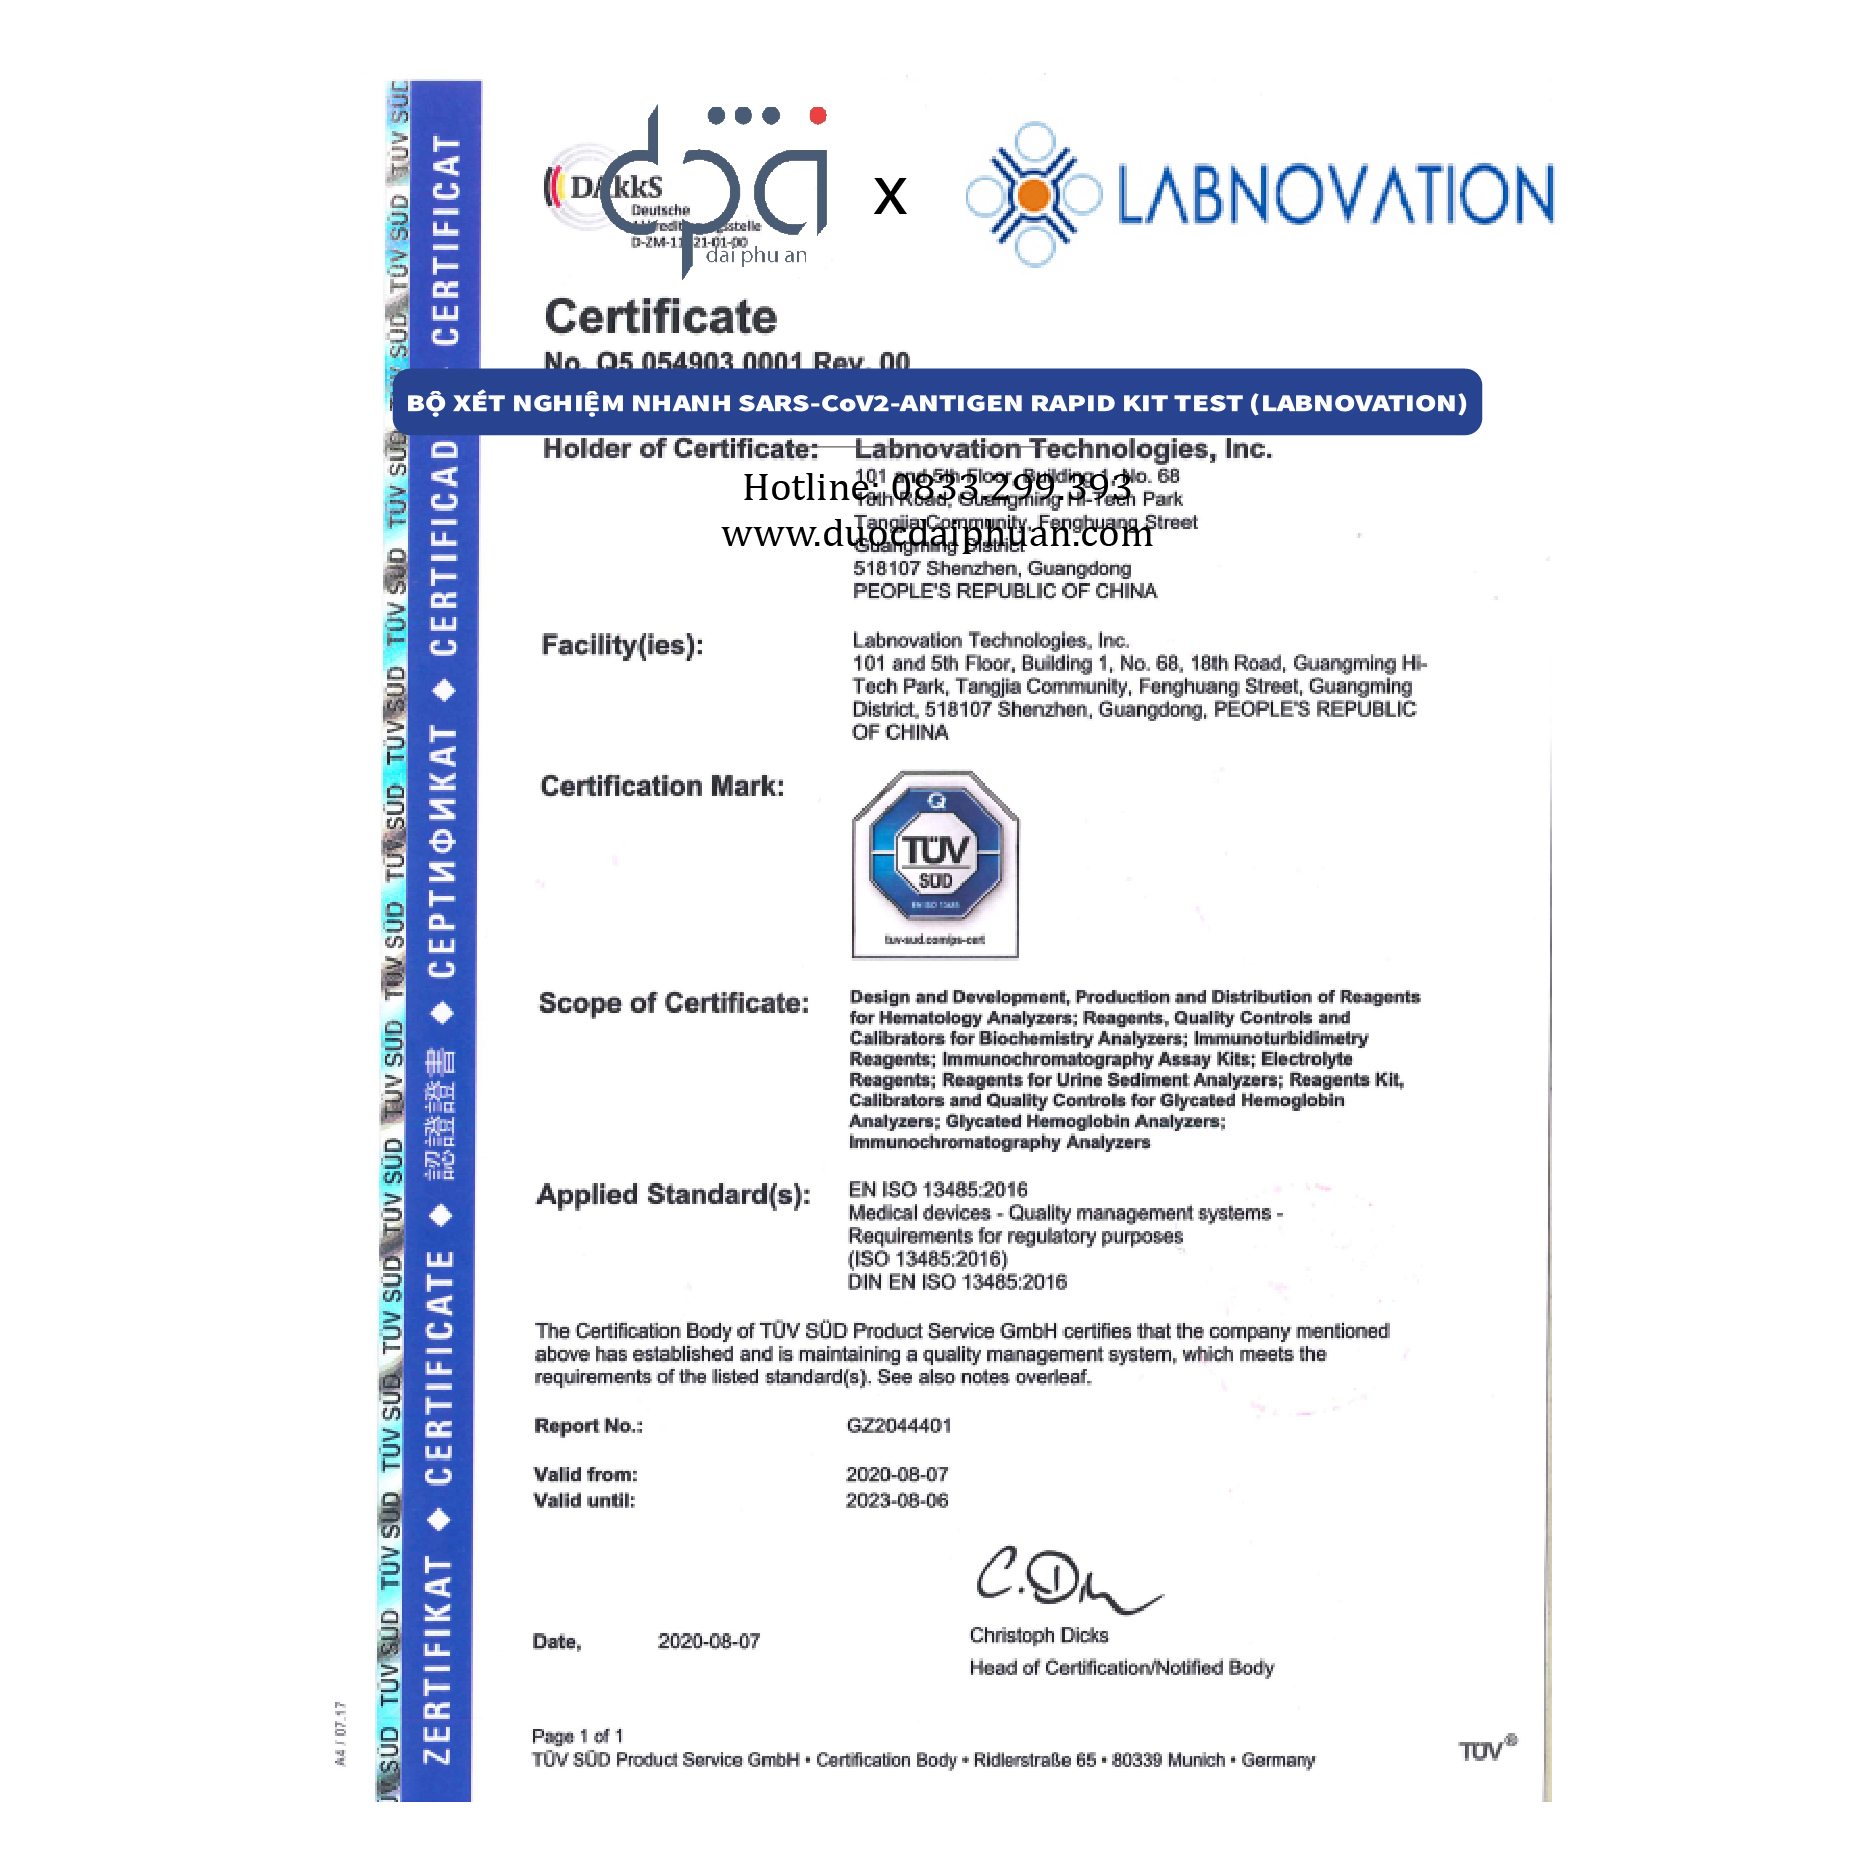 [Tặng khẩu trang miễn phí] Combo 2 bộ kit test nhanh Labnovaion Antigen Rapid Test Kit chính hãng, kết quả chính xác sau 30s